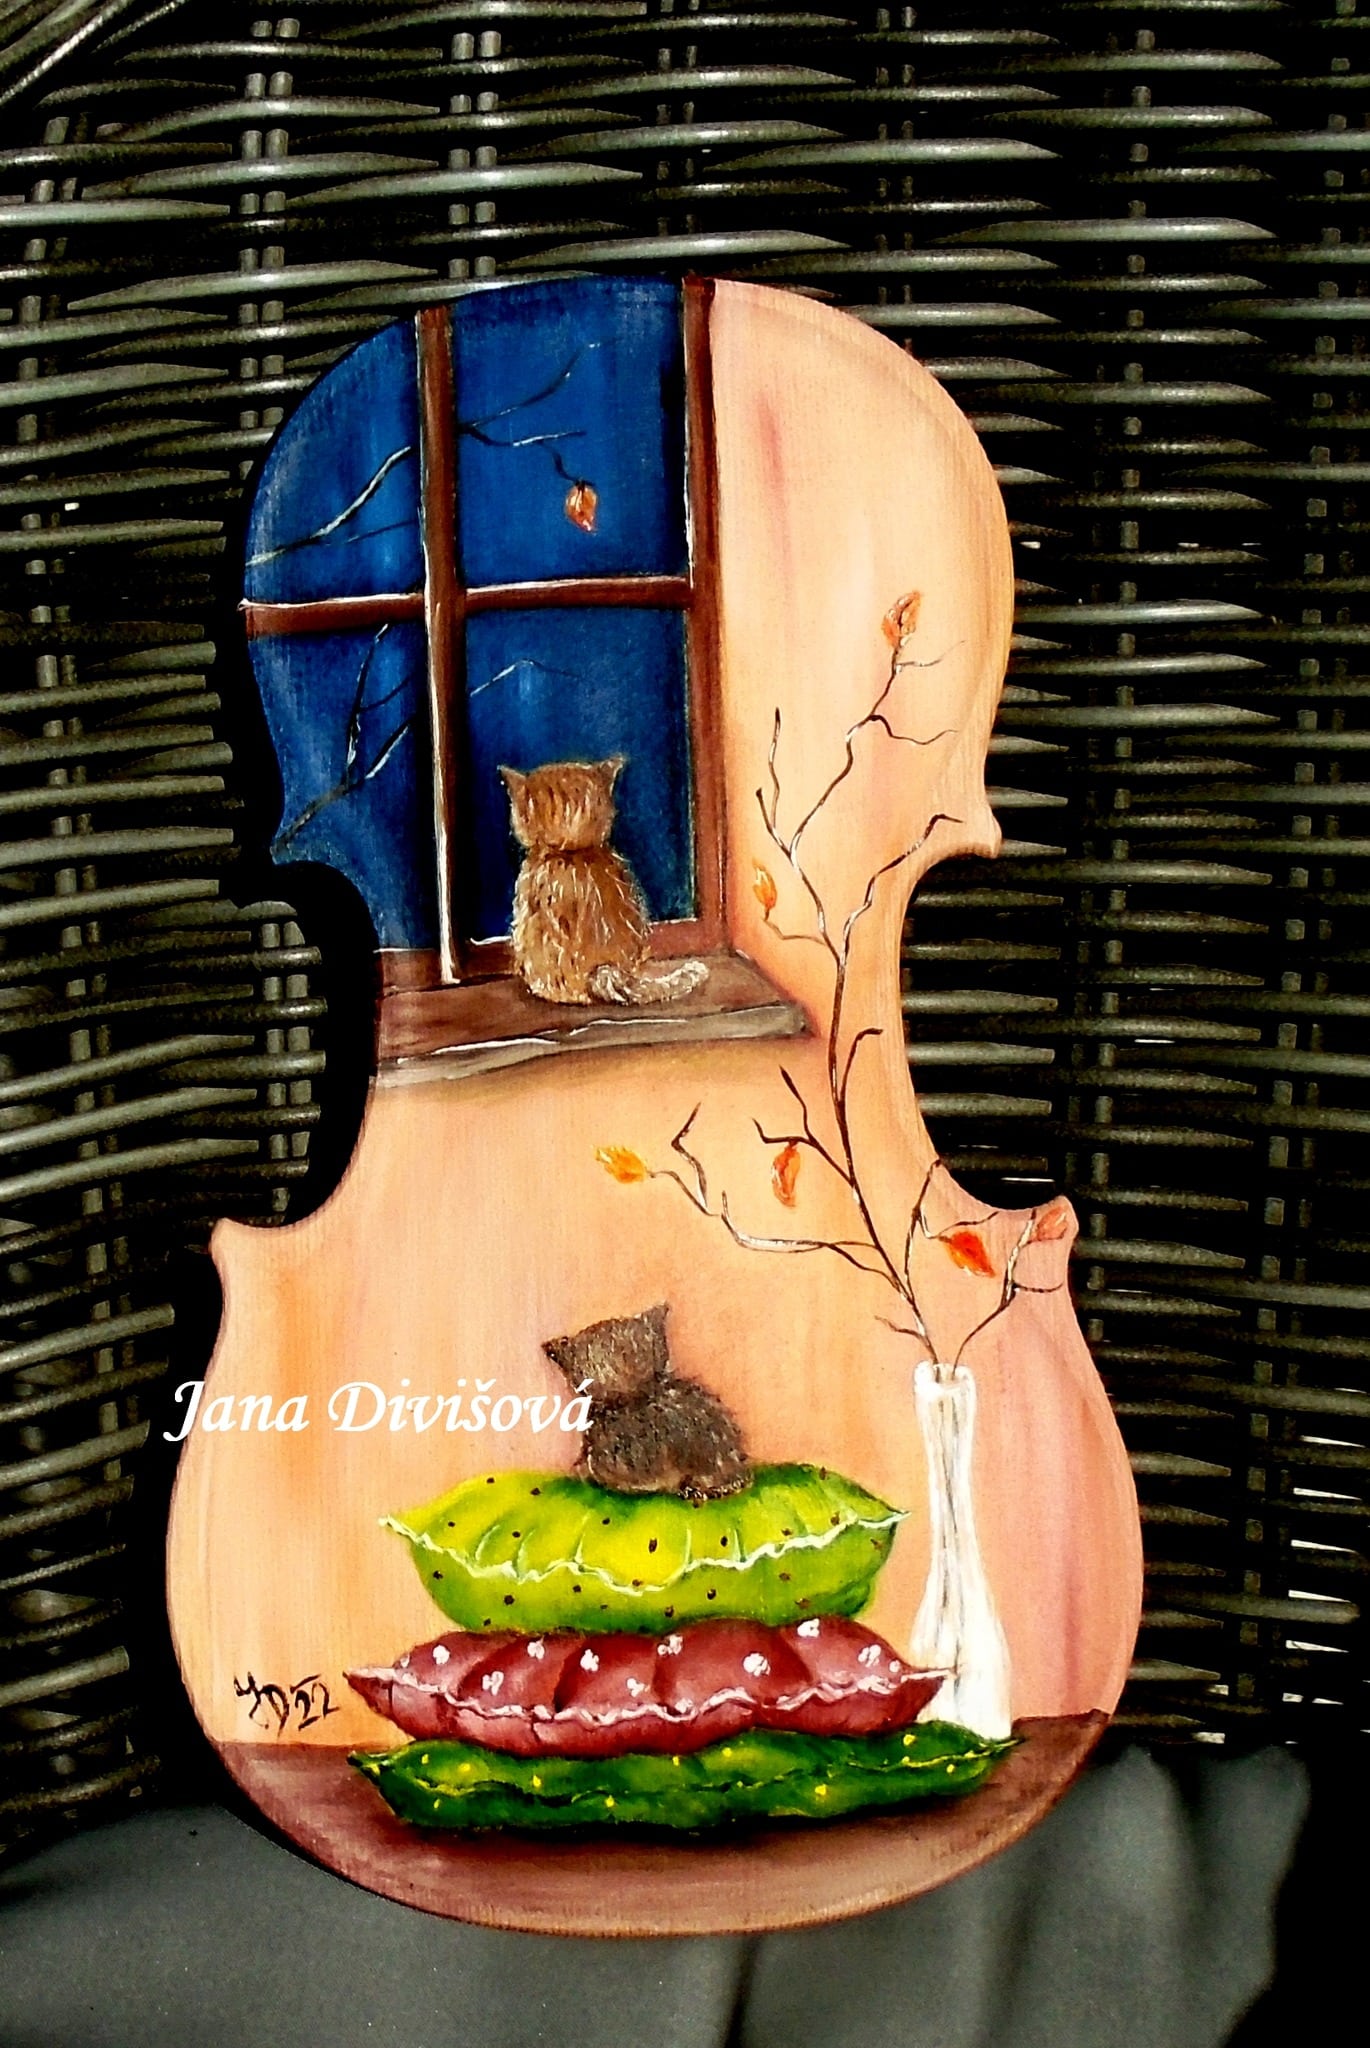 rozhovor: výtvarnice jana objevila svou vášeň pro olejomalbu. jejím plátnem jsou také houslové desky